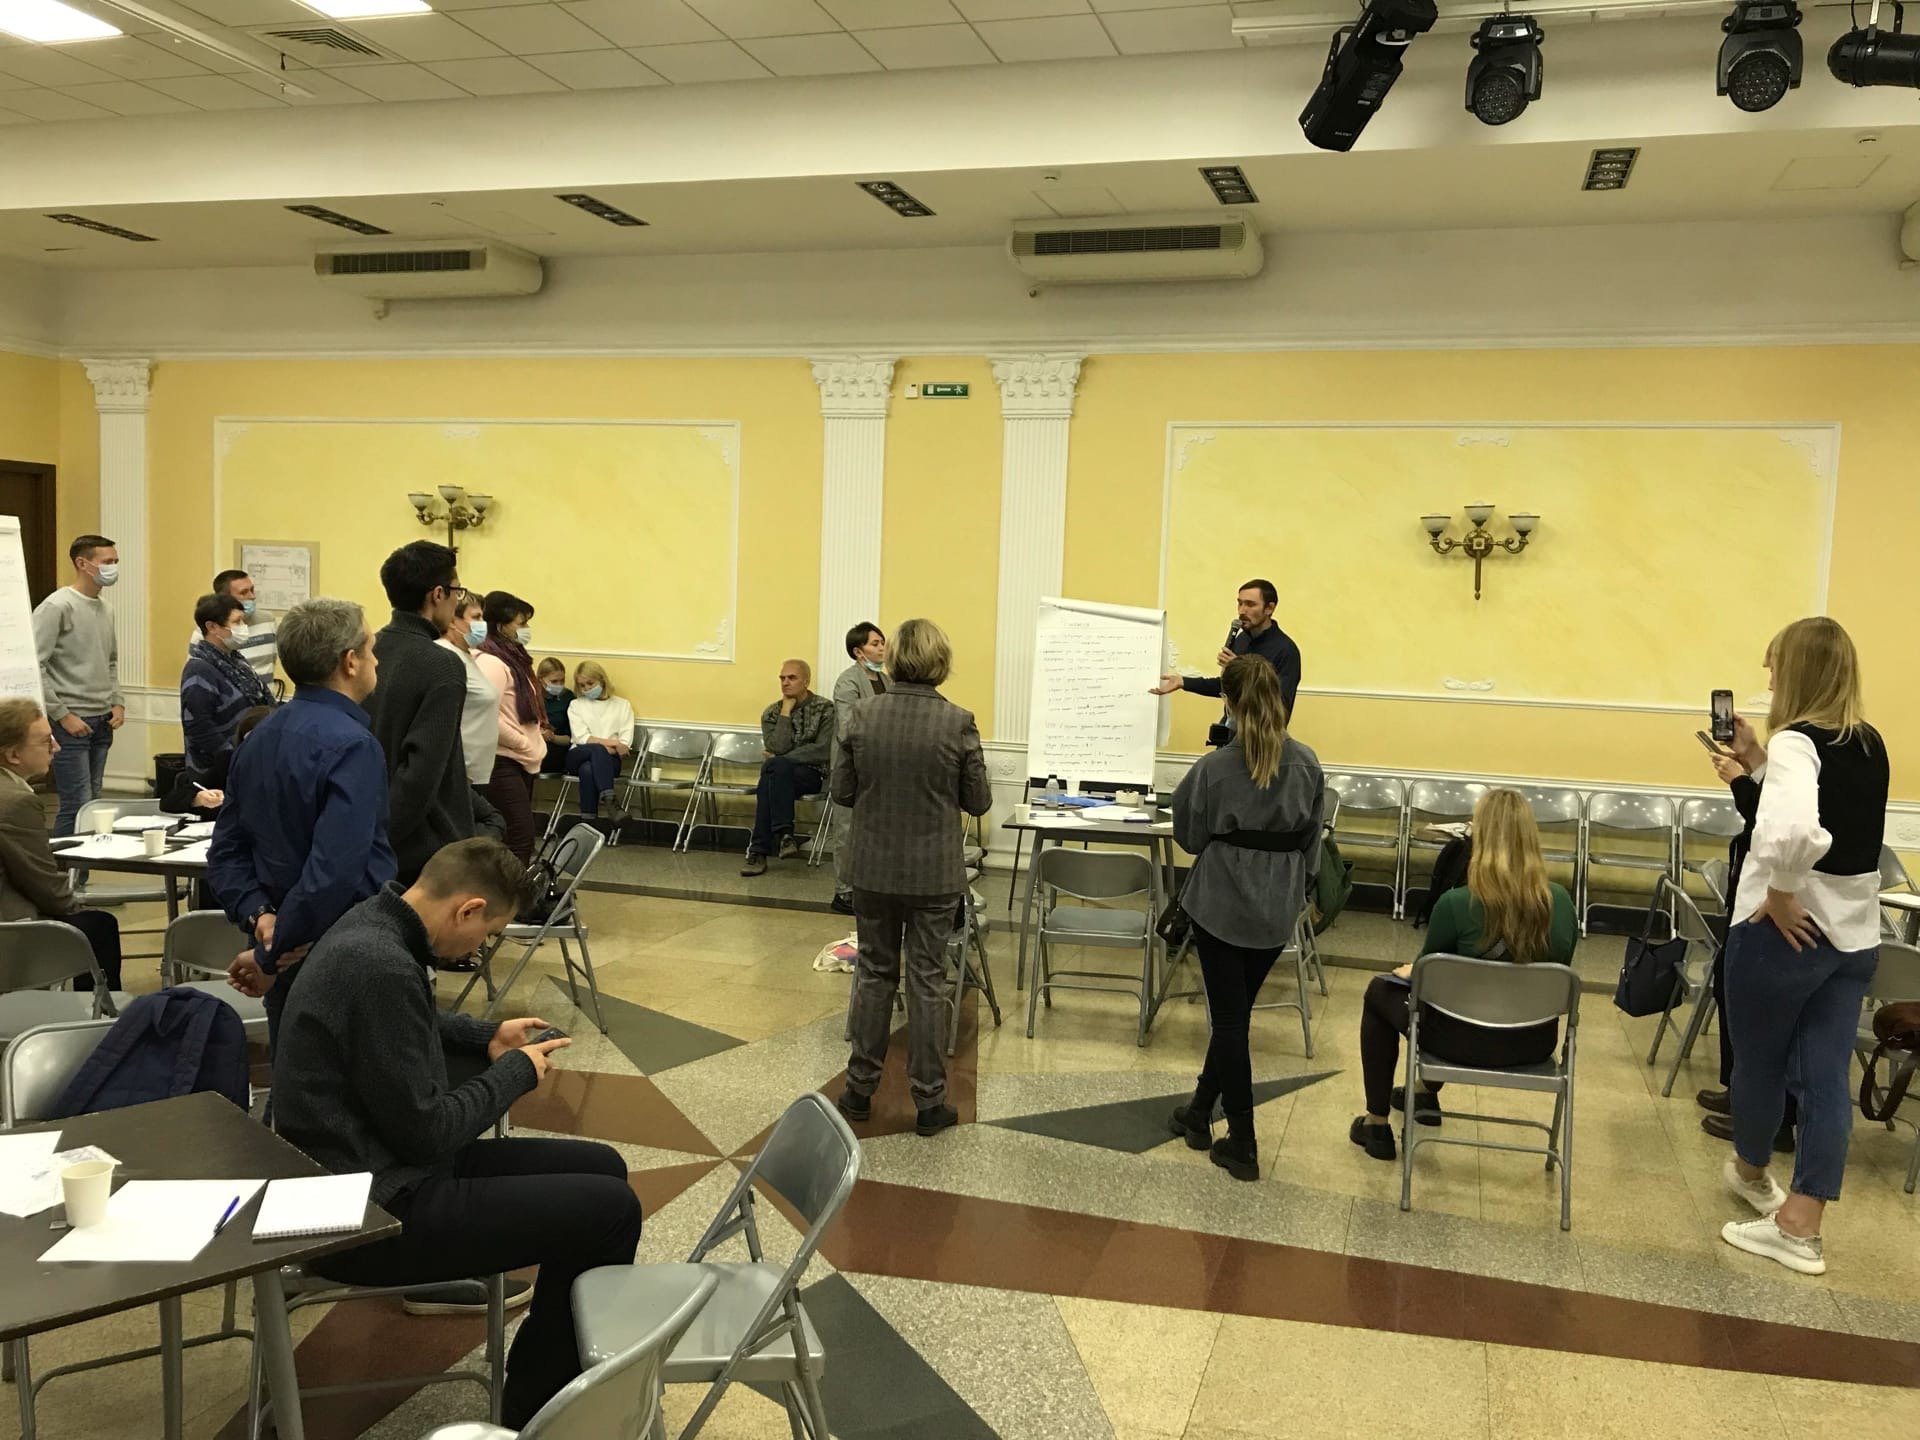 

Концепцию Центра удмуртской культуры обсудили в Ижевске

